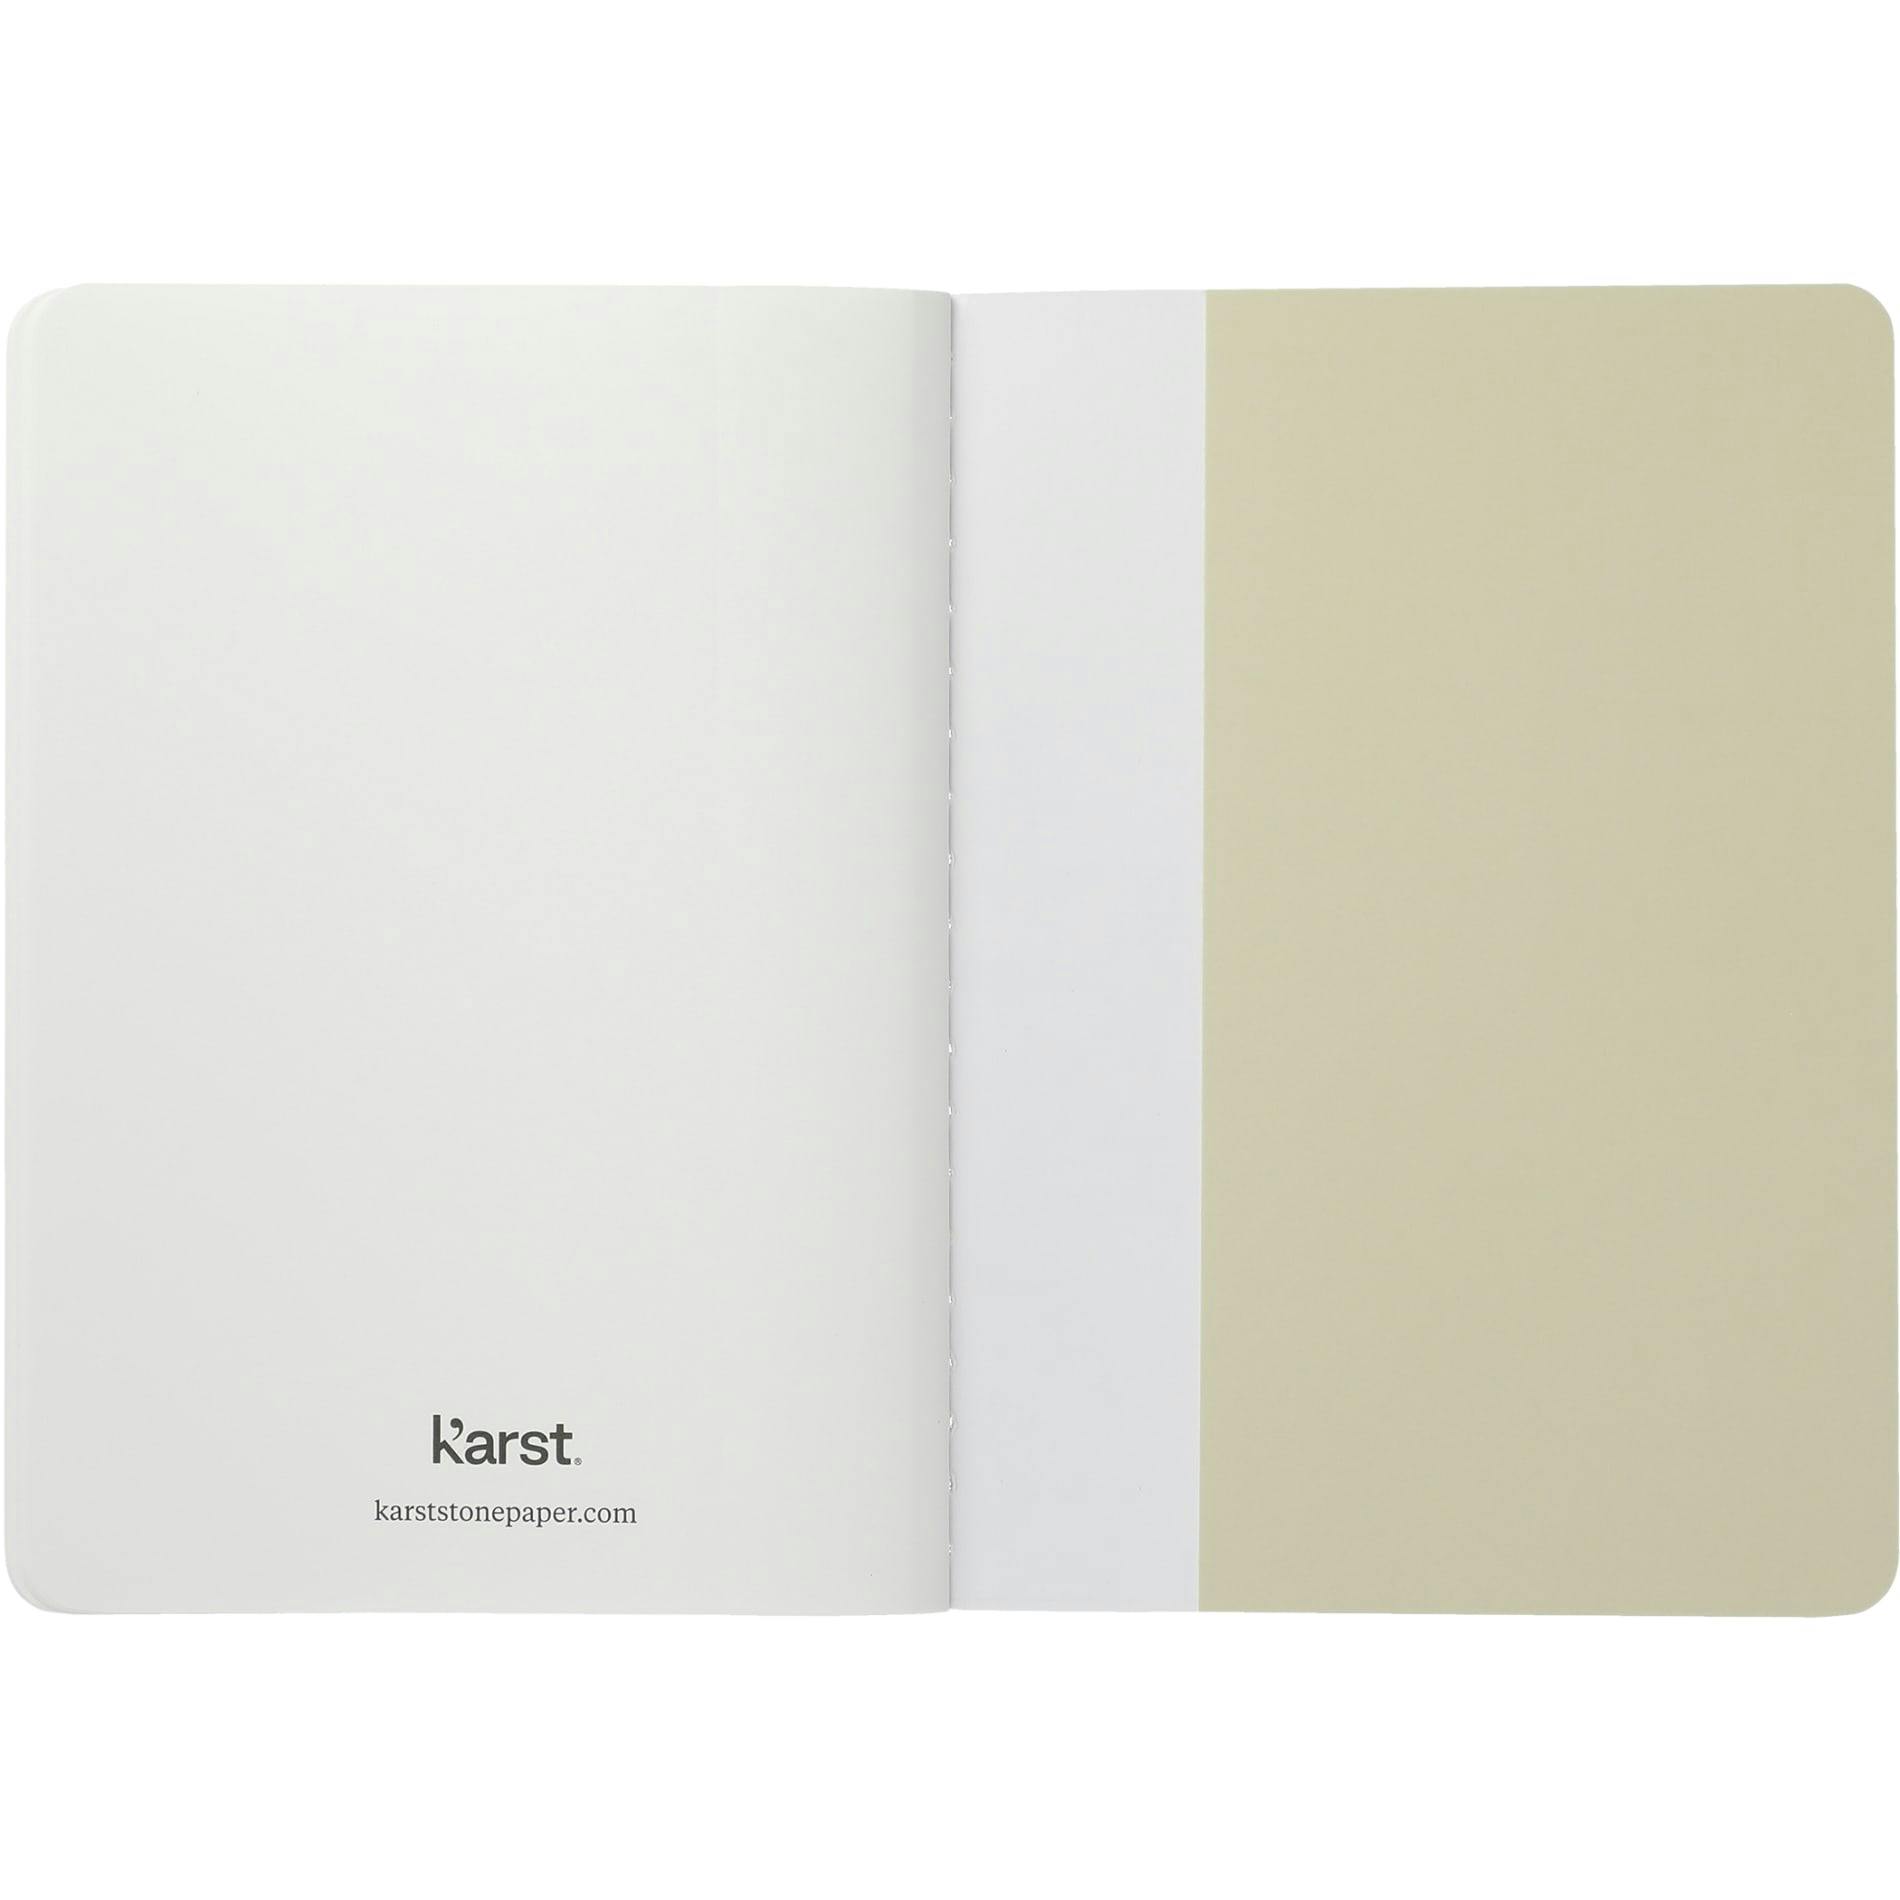 Karst Pocket Stone Paper Notebook - additional Image 2